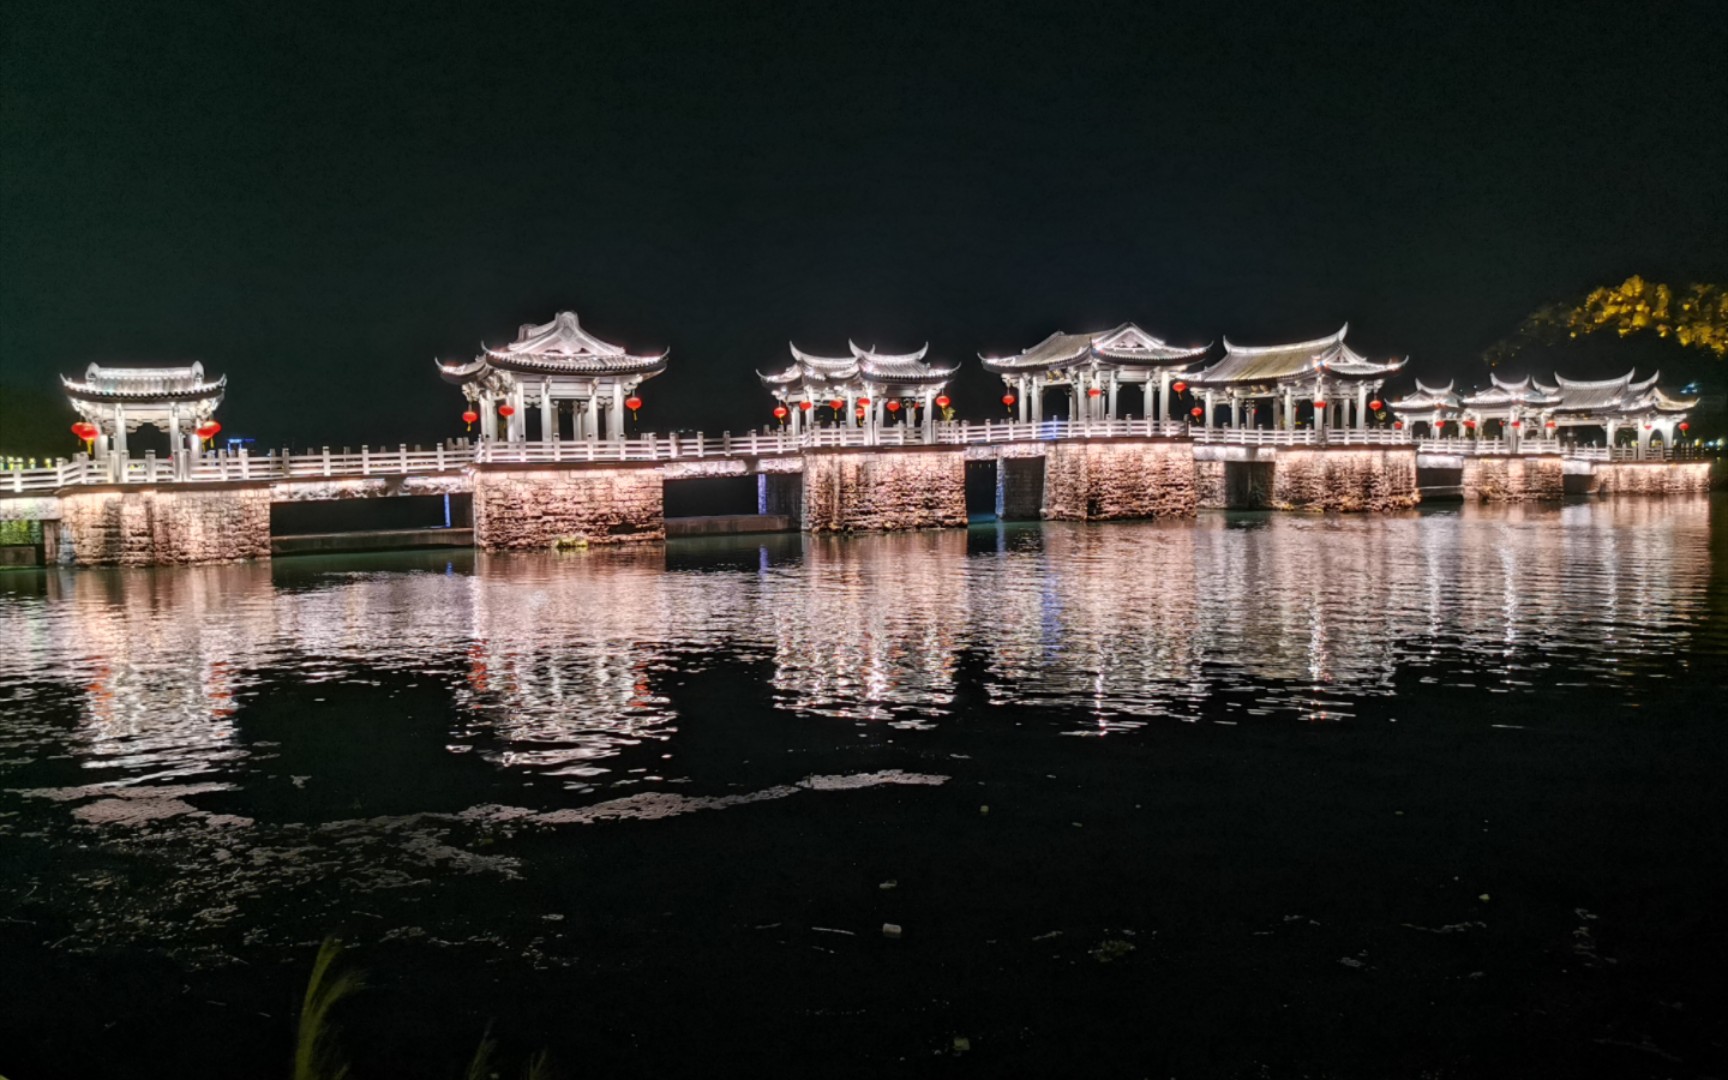 潮州灯光秀2021图片